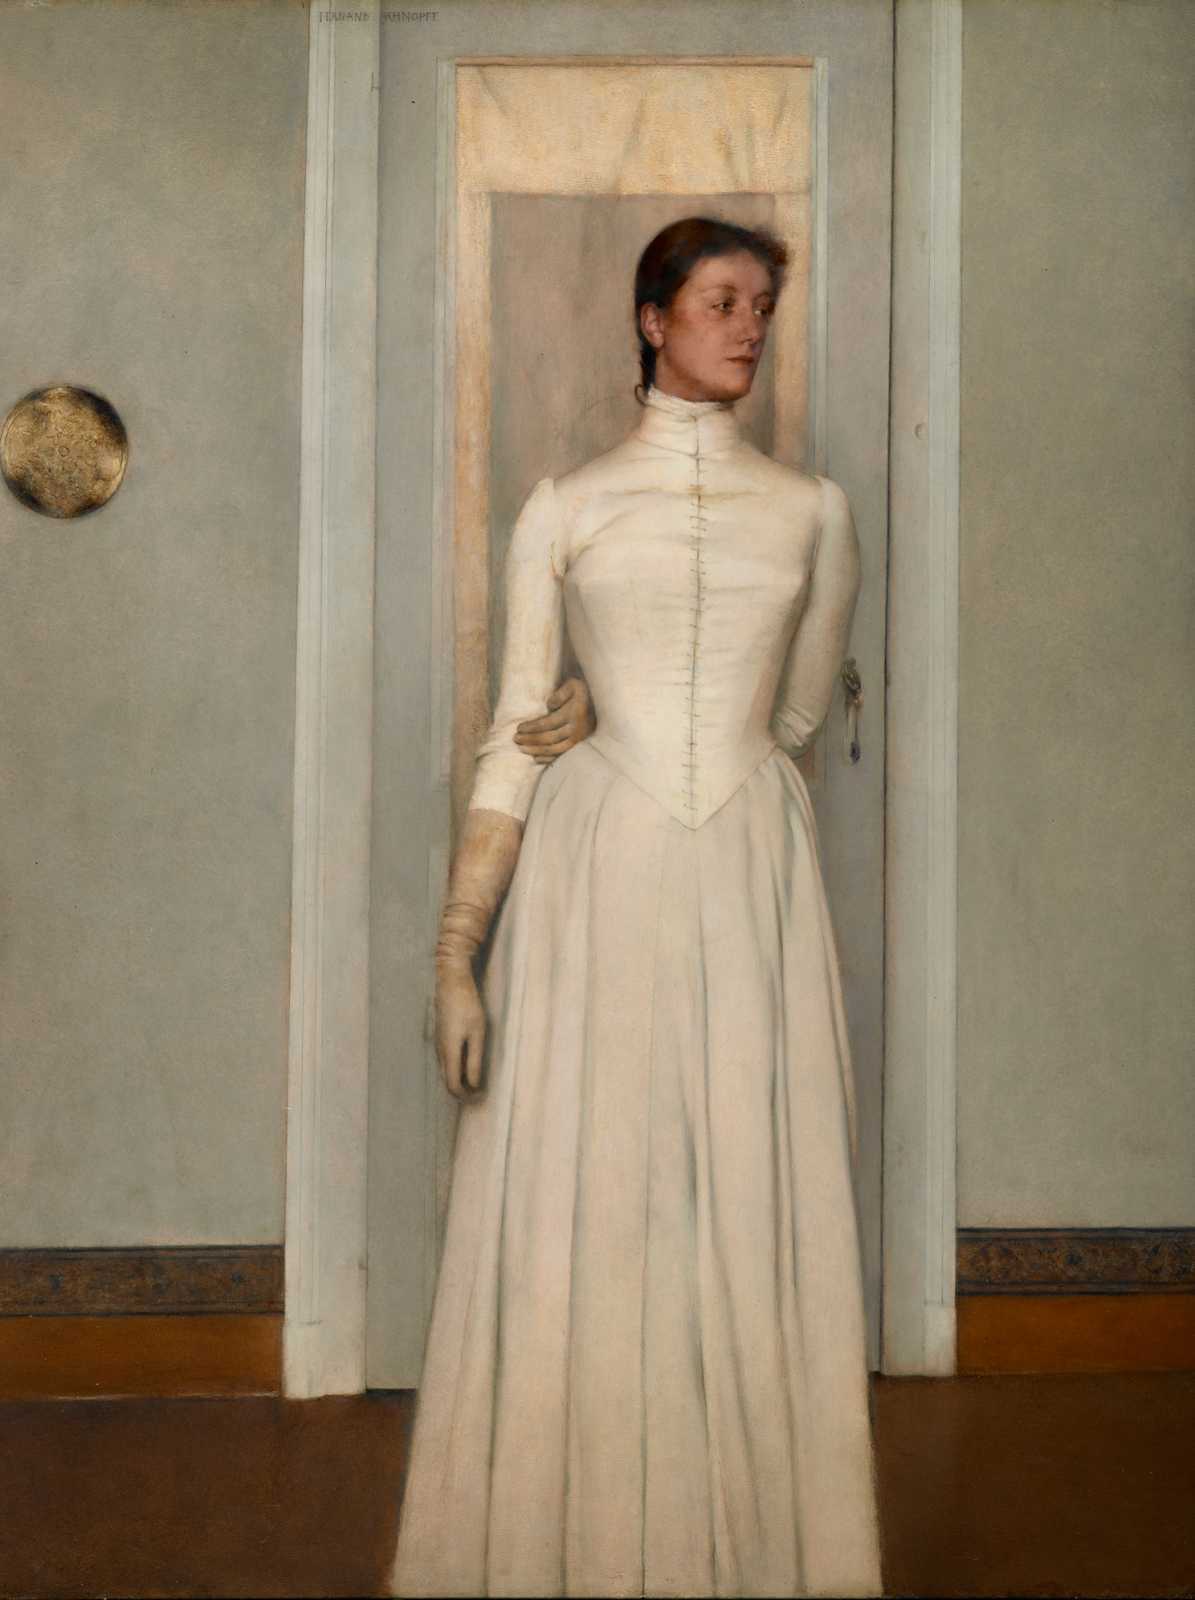 Khnopff, Fernand. 1887. Portrait de Marguerite Khnopff, huile sur toile, 97,2 x 75,5 cm, Bruxelles, Musées royaux des beaux-arts de Belgique.
